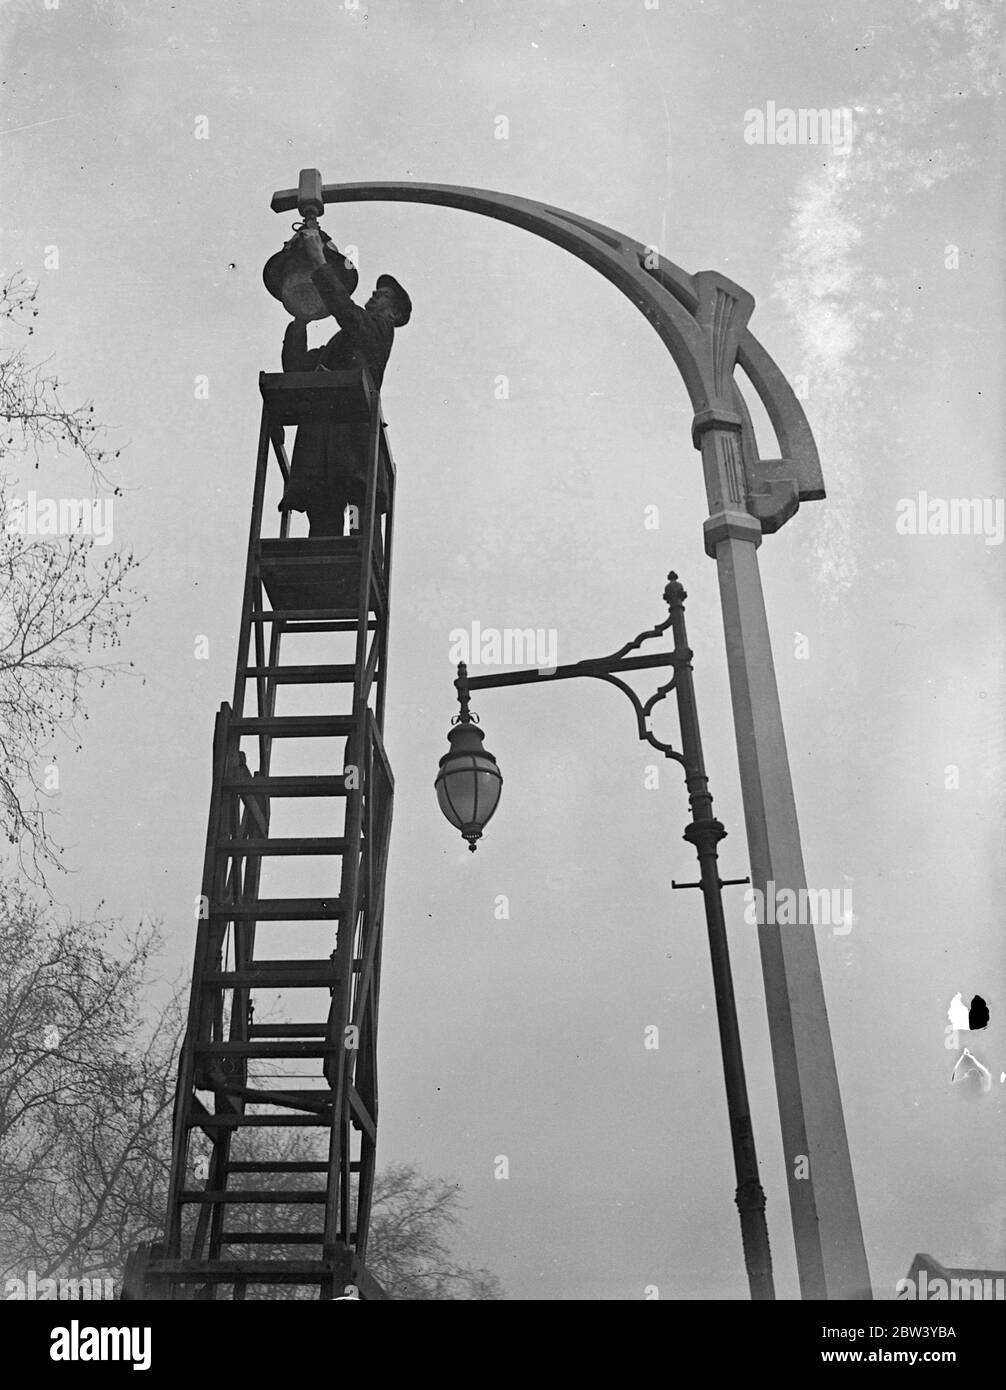 Nuove lampade per vecchi a Fulham. Nuovi standard di lampade intelligenti sono in fase di costruzione in New King's Road, Fulham, come parte del progetto del Ministro dei Trasporti per migliorare l'illuminazione stradale. Foto spettacoli: Una delle nuove lampade si trova in New King's Road con uno dei vecchi tipi sullo sfondo. 4 marzo 1937 Foto Stock